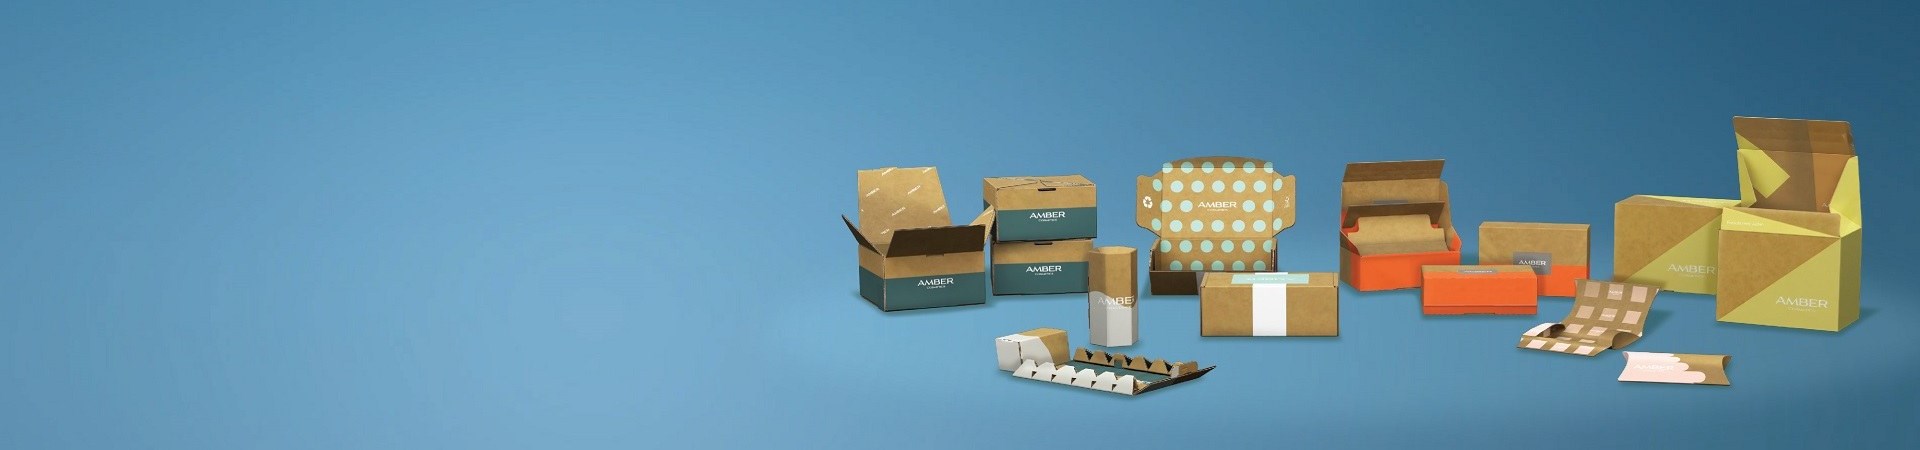 E-handelsförpackningar, förpackningar för hälsa och skönhet